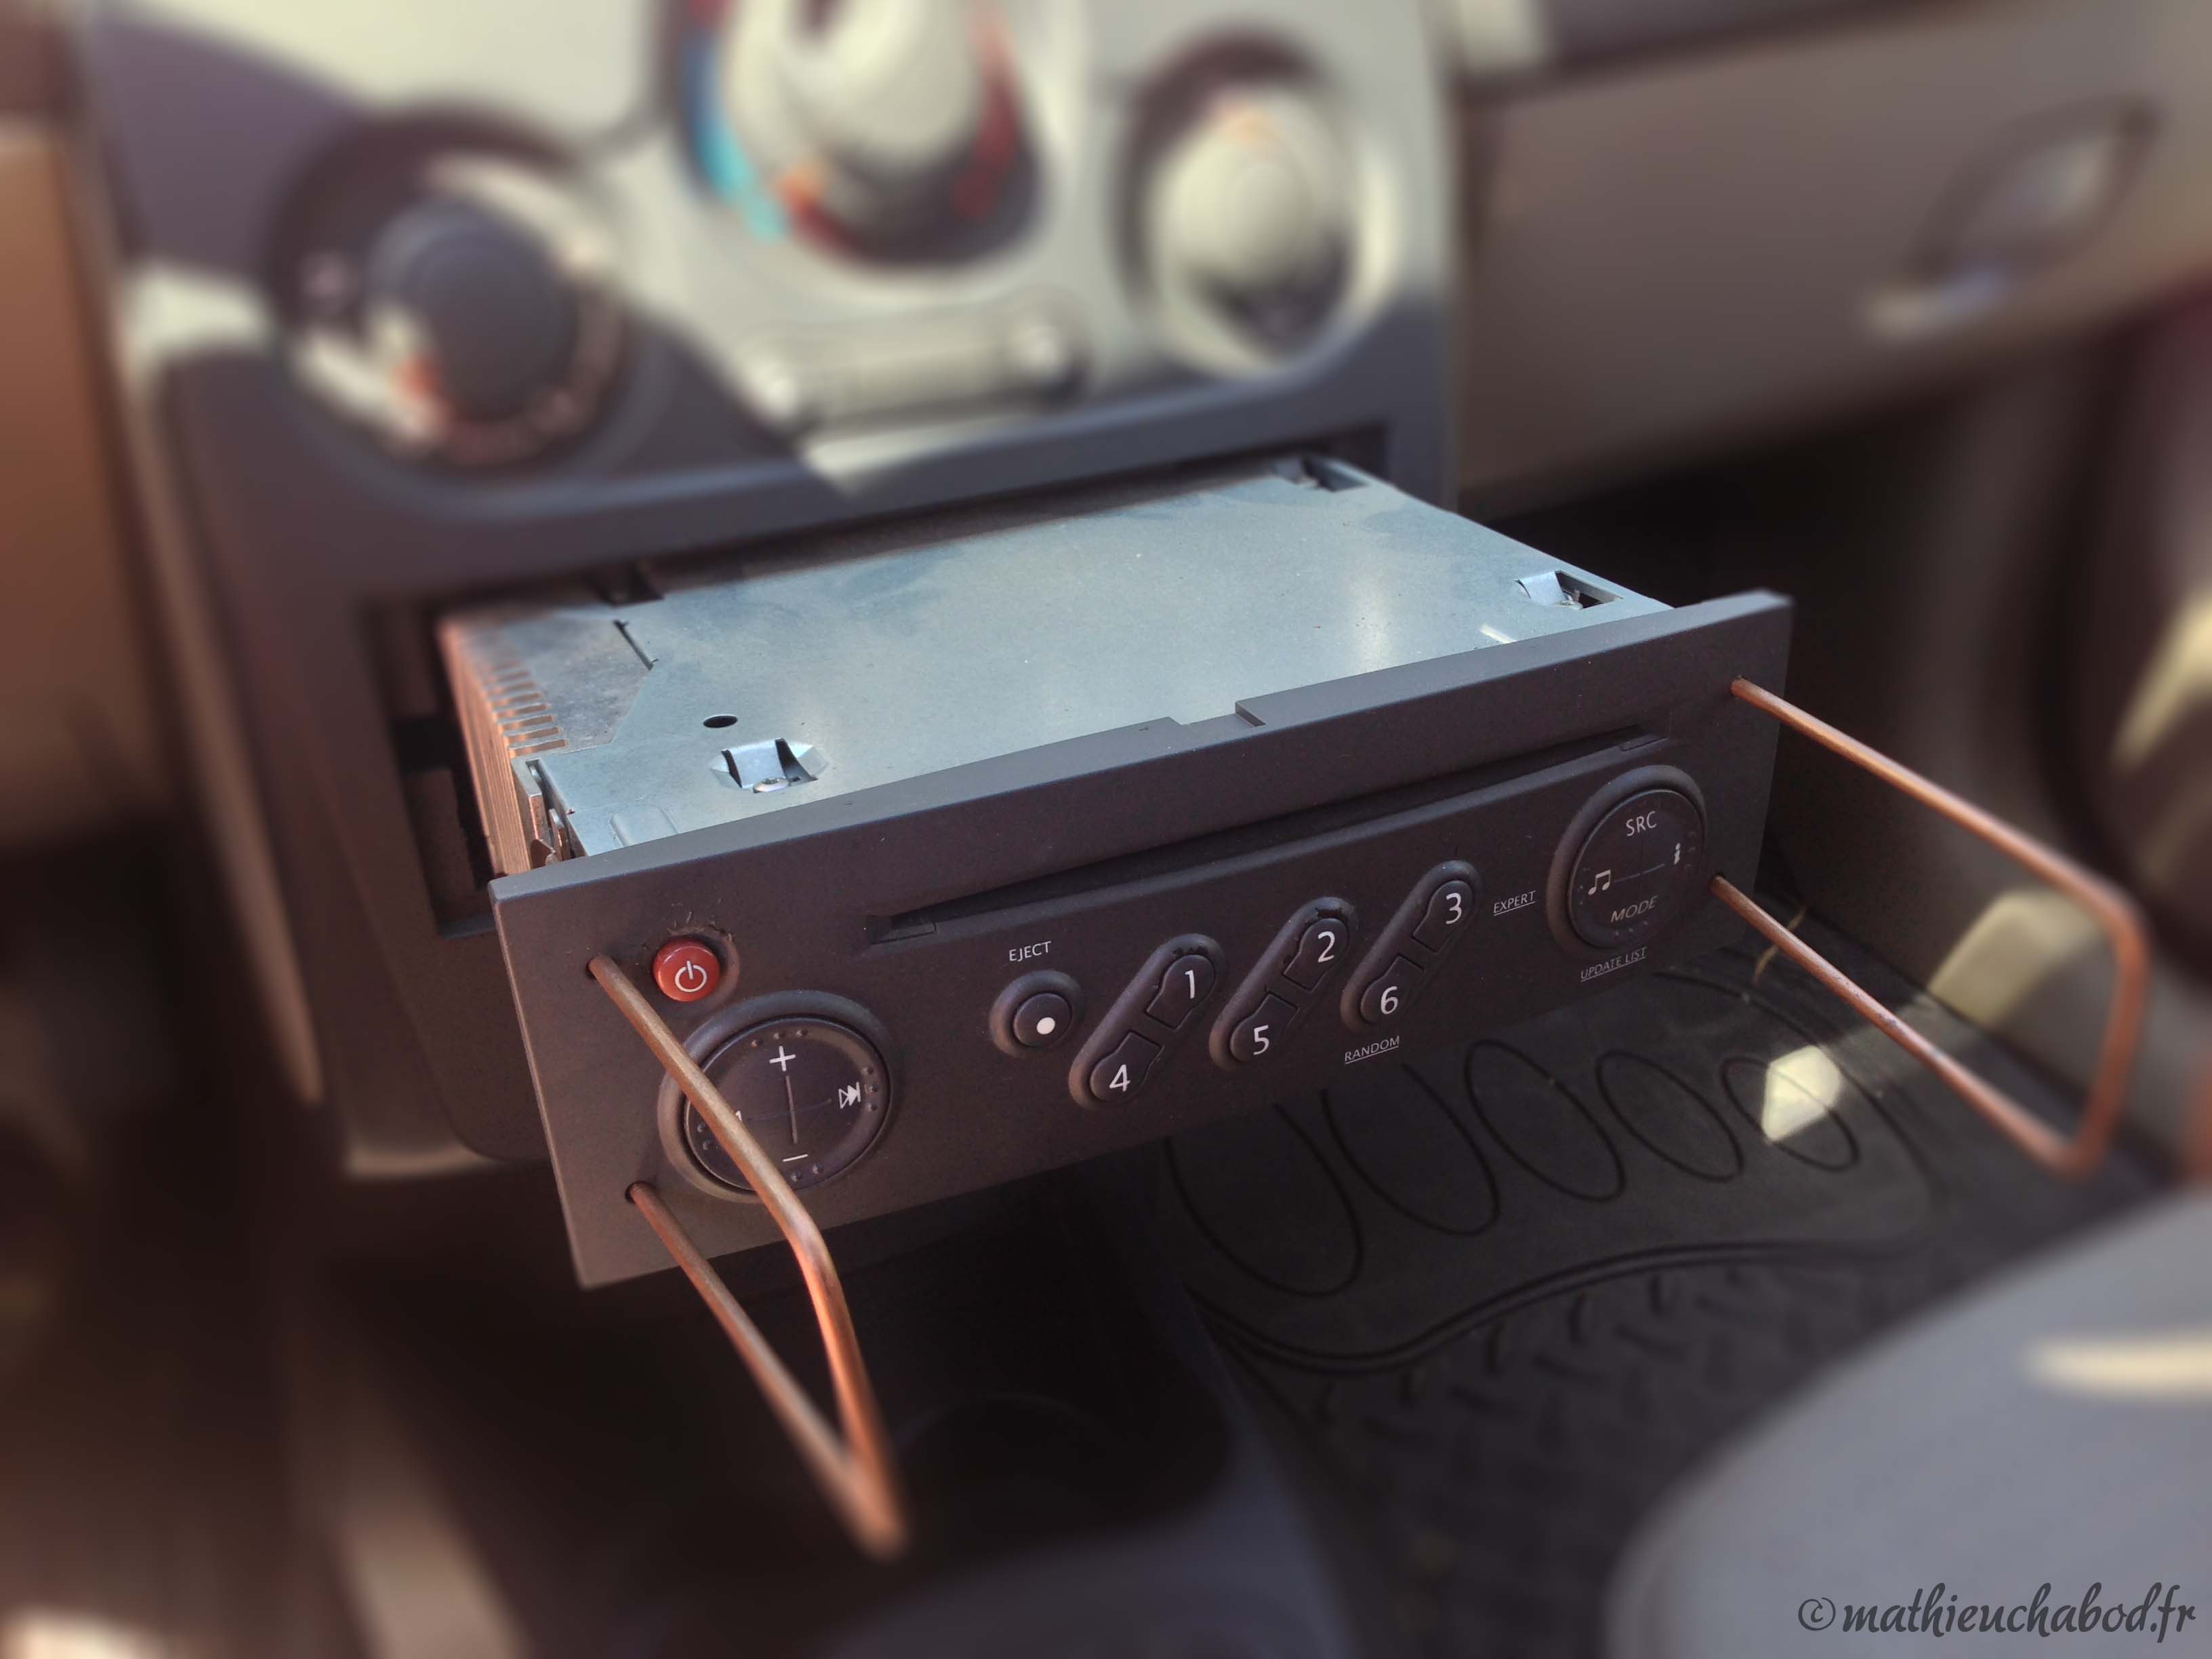 Vidéo : comment débloquer un autoradio cassette Renault Clio 2? 